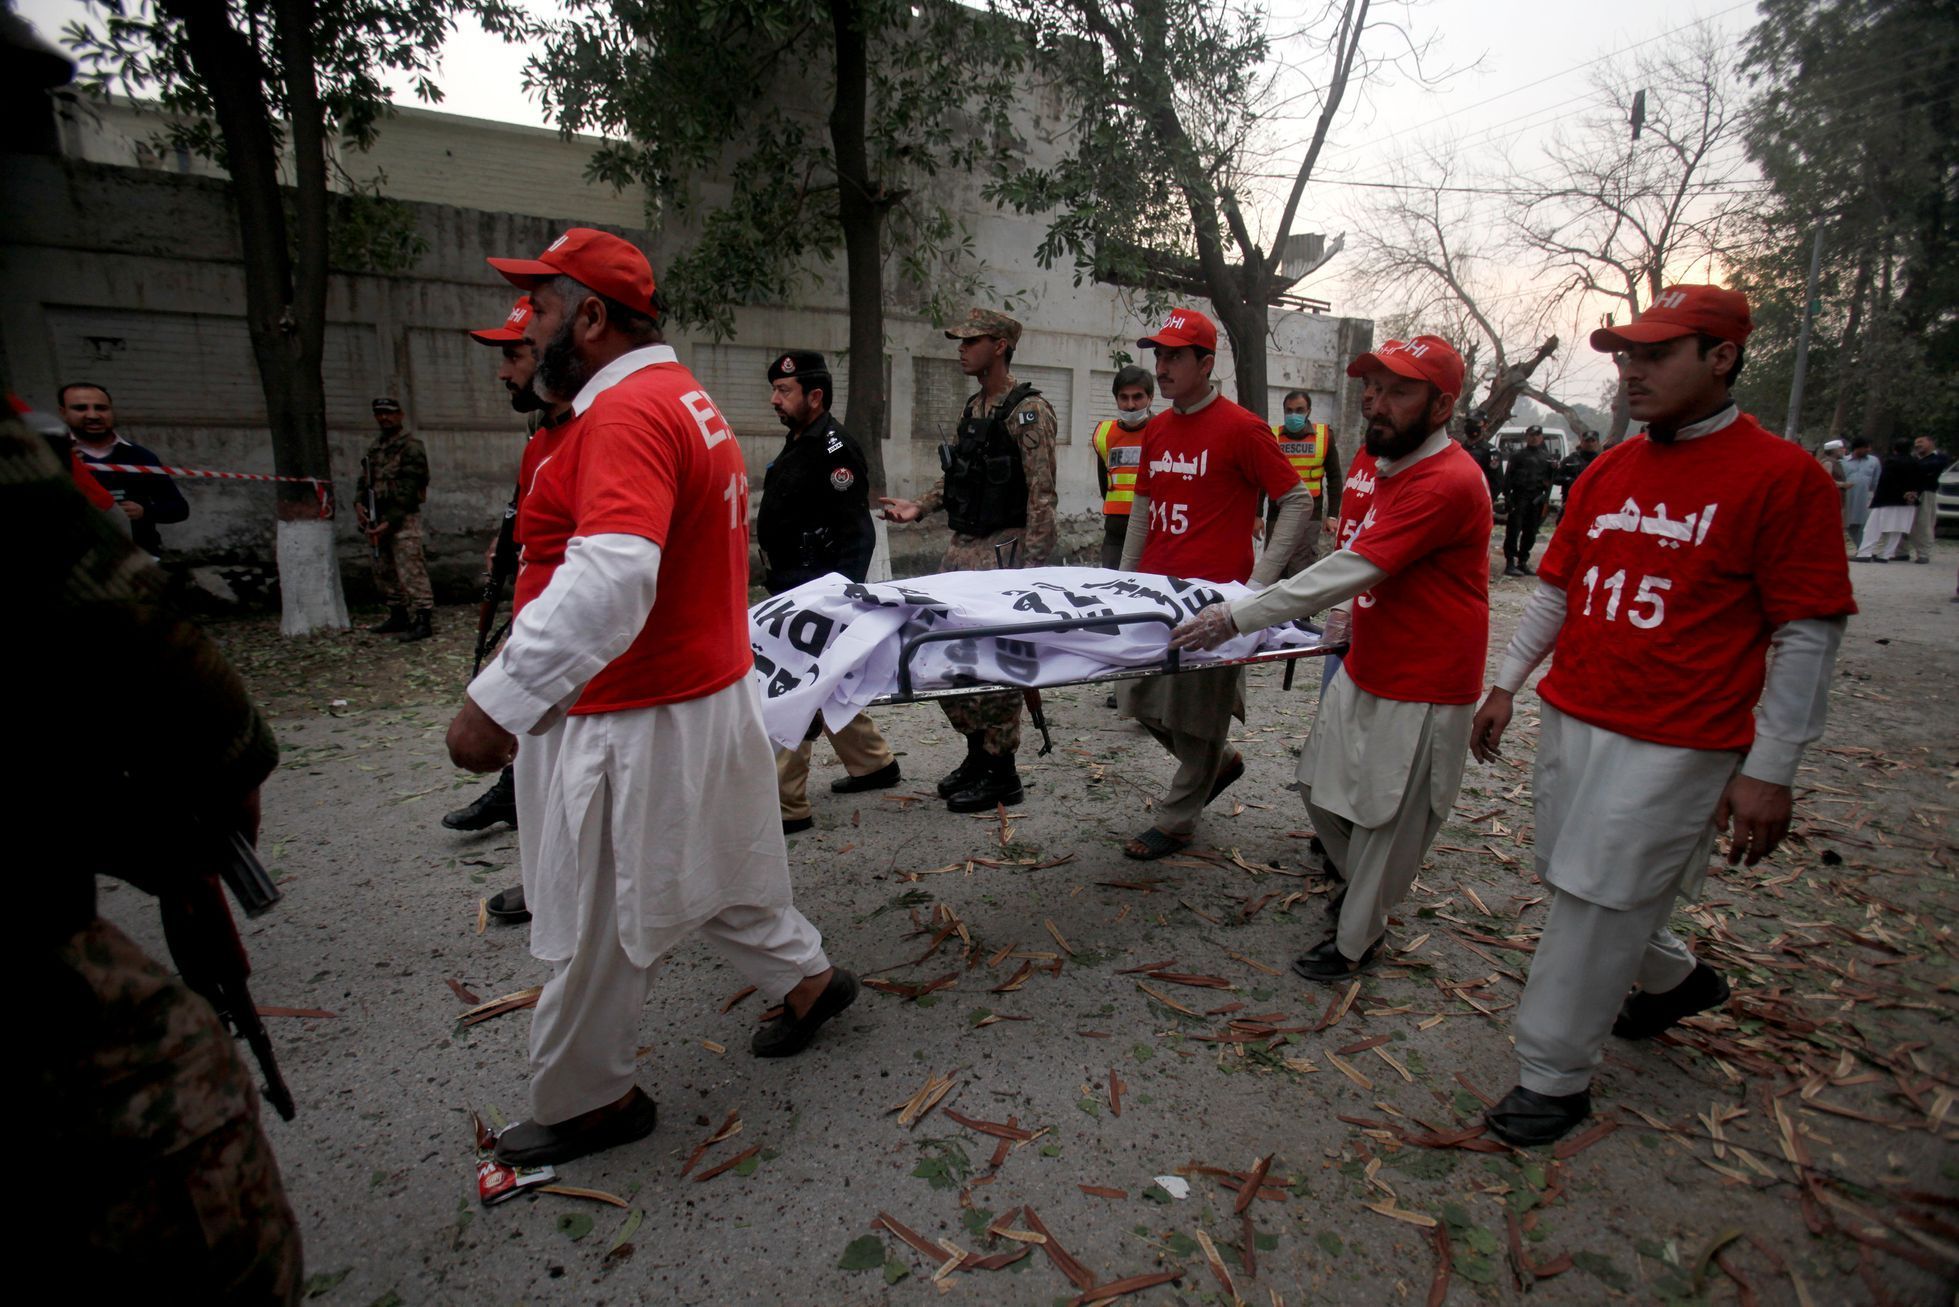 Výbuch v Pákistánu